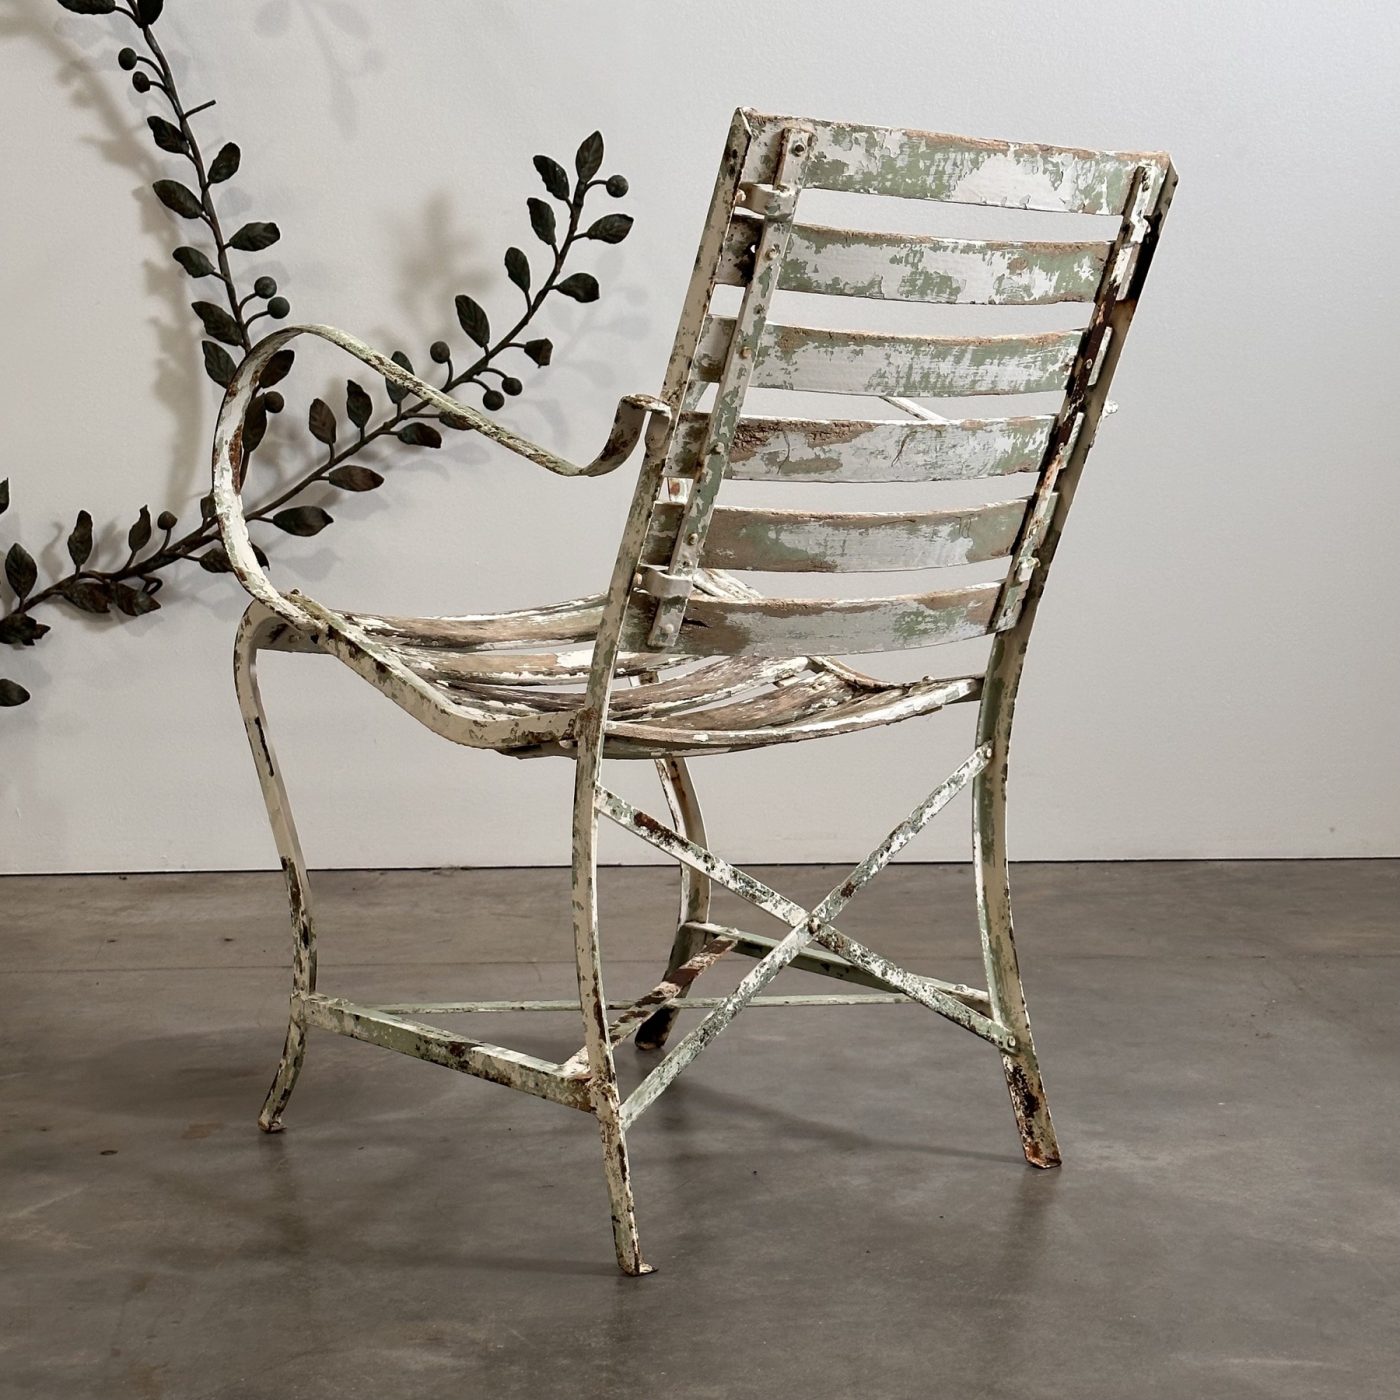 objet-vagabond-garden-chairs0001